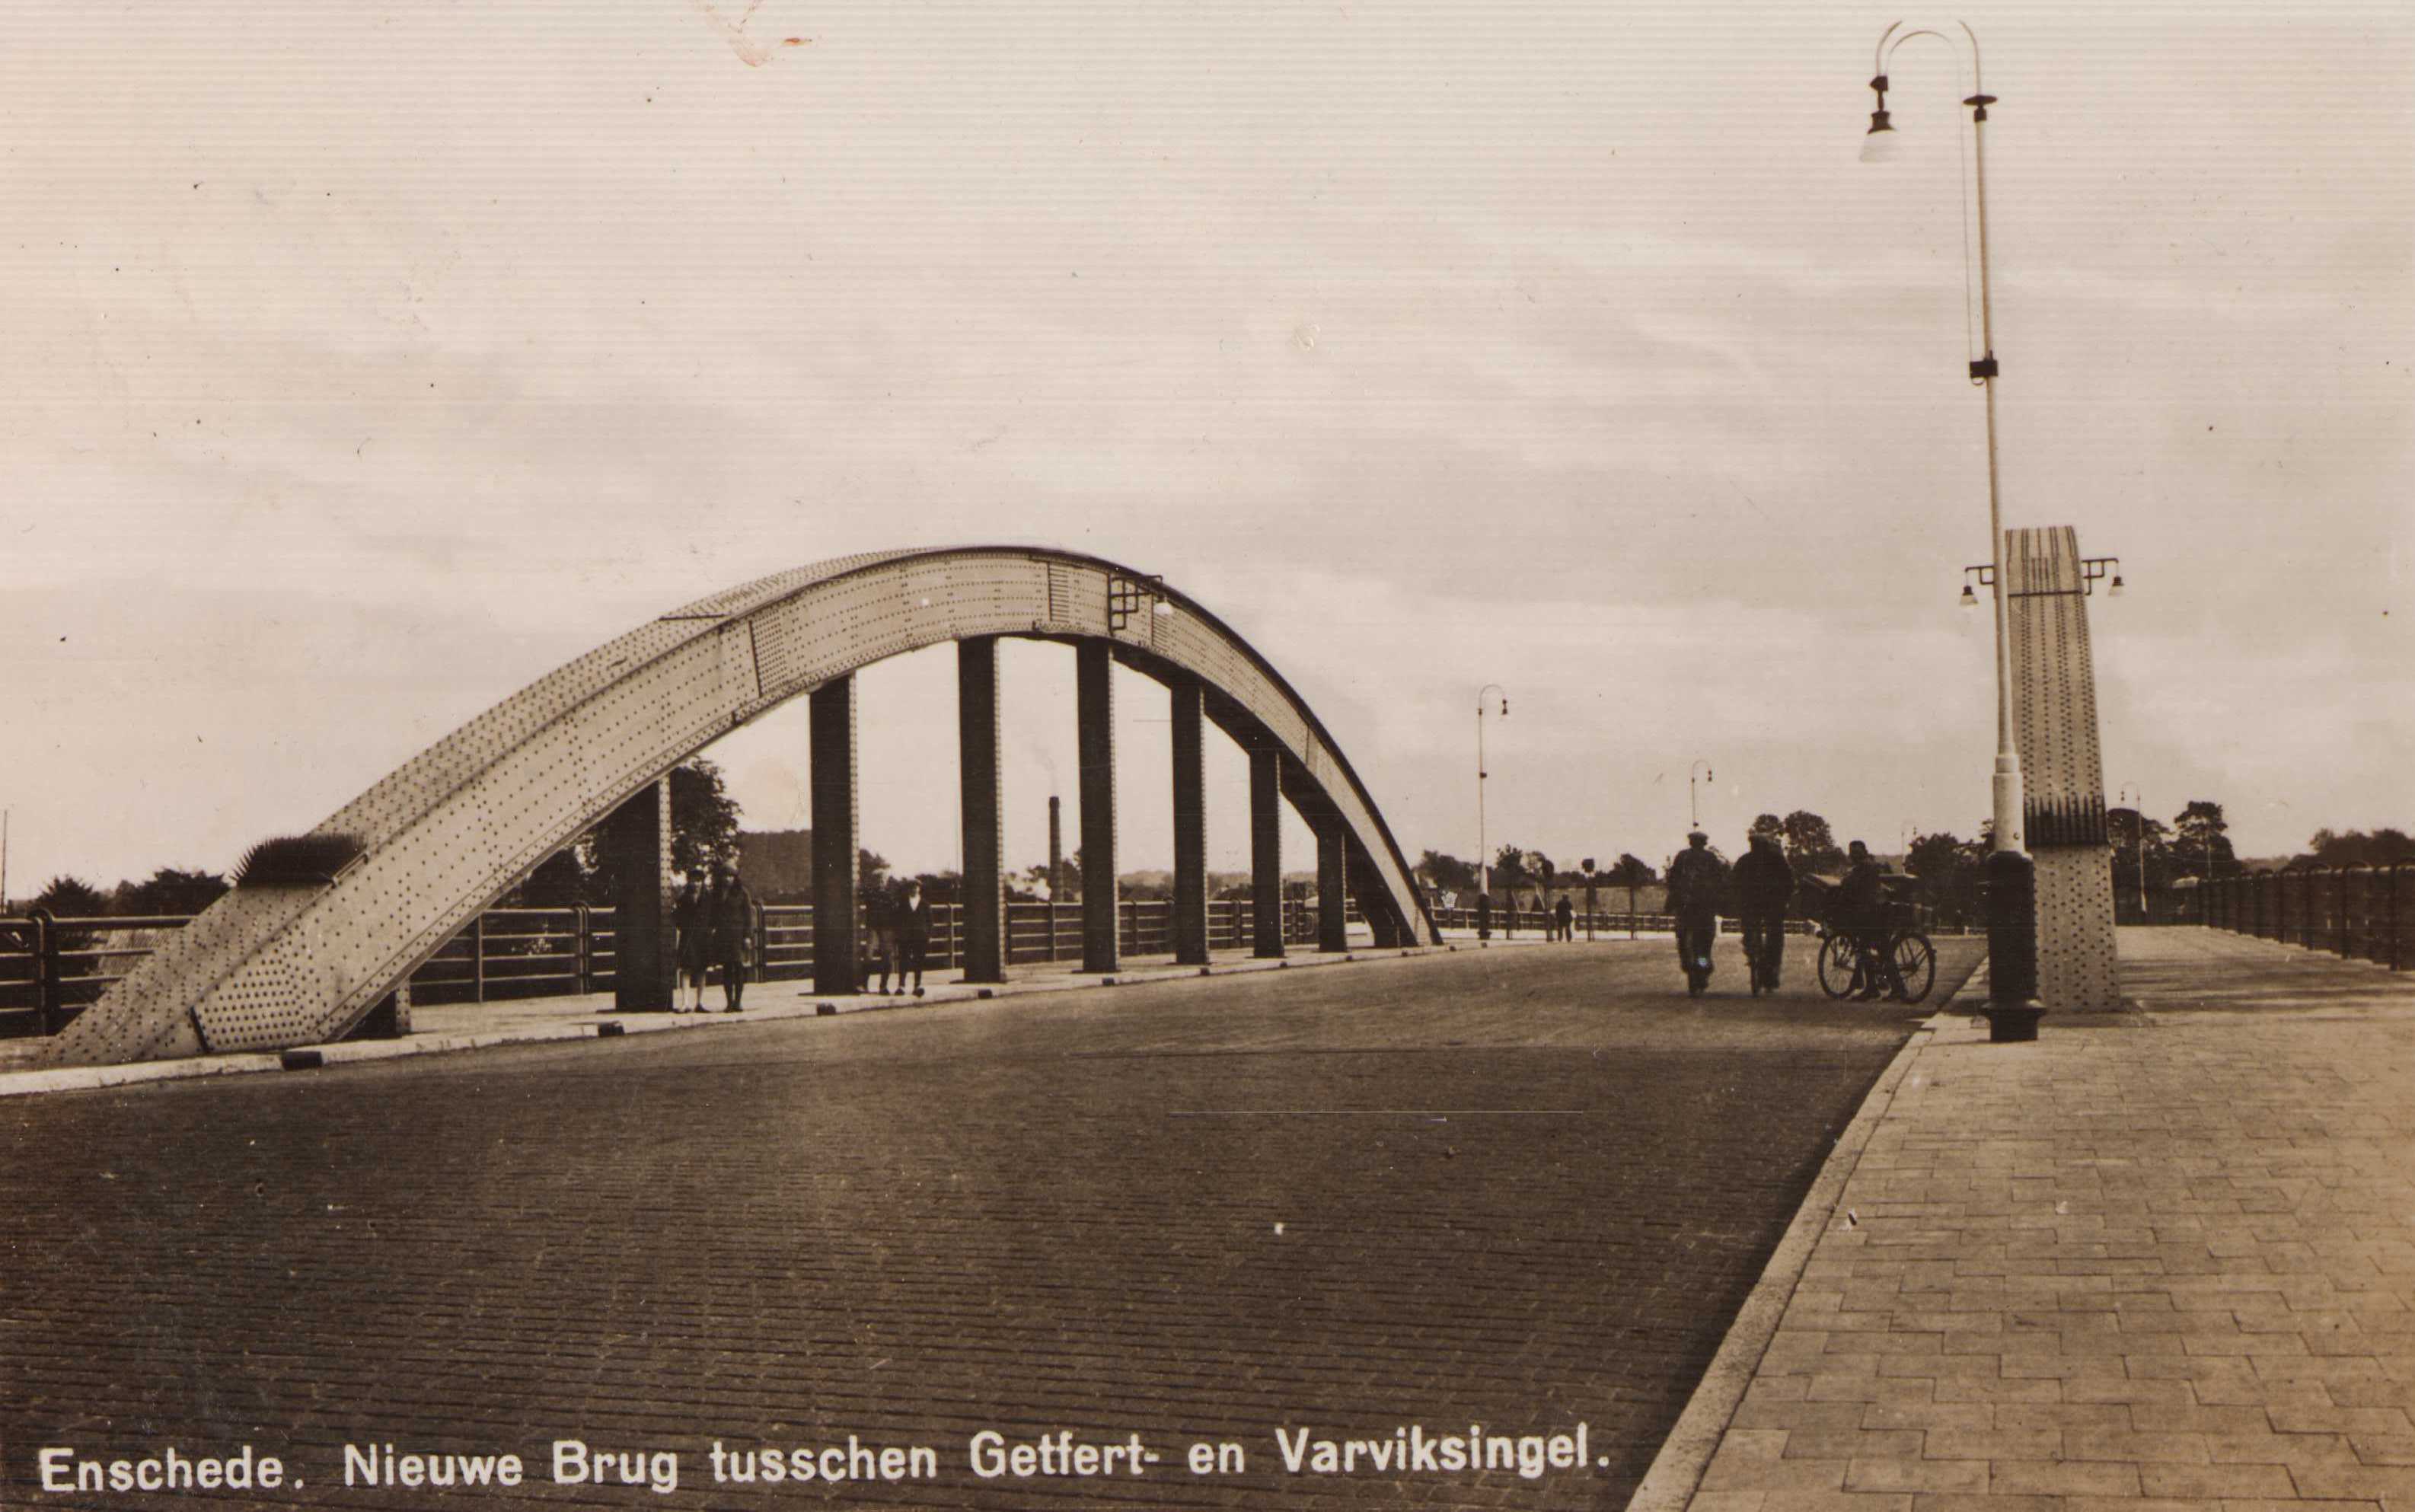 Varvikbrug-1934-edce78ff.jpg